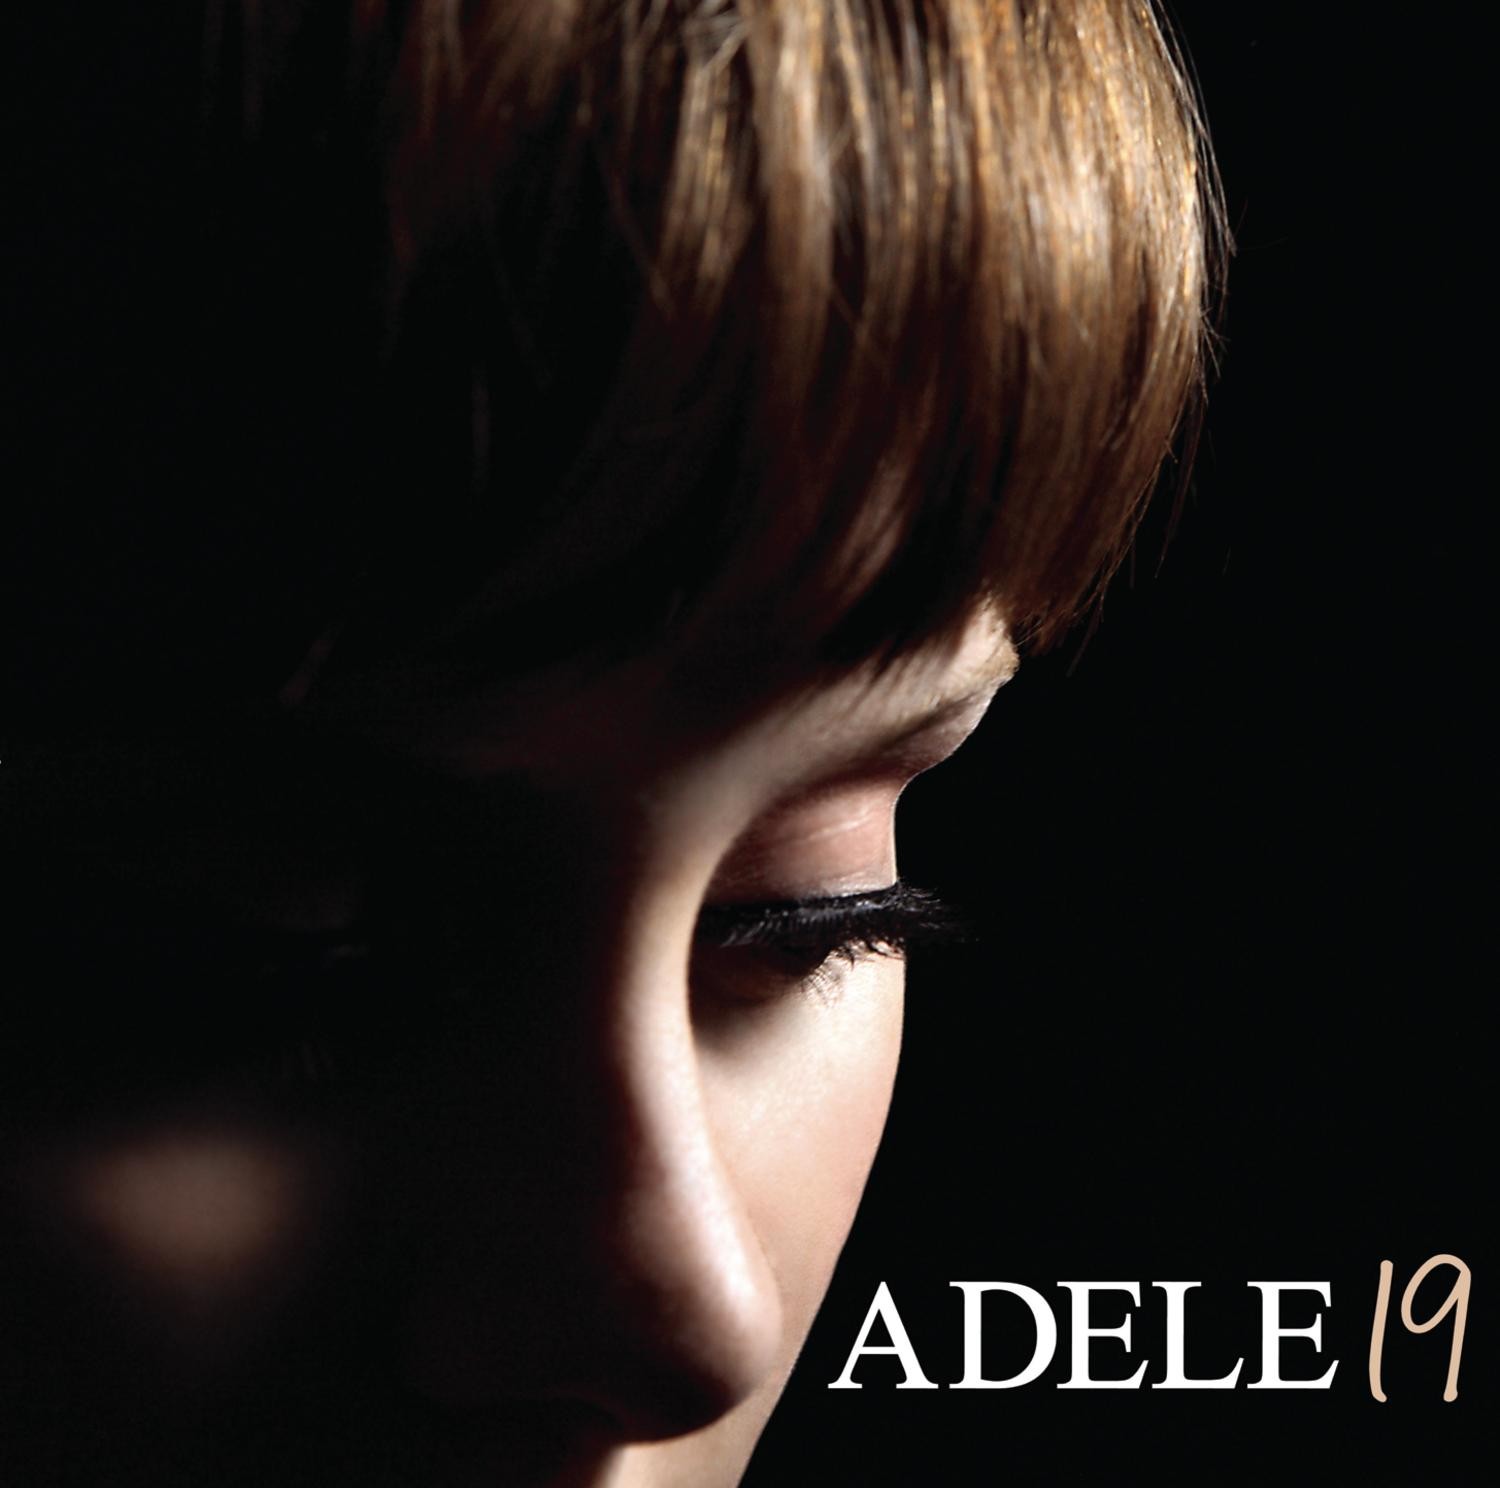 Adele - 19 LP